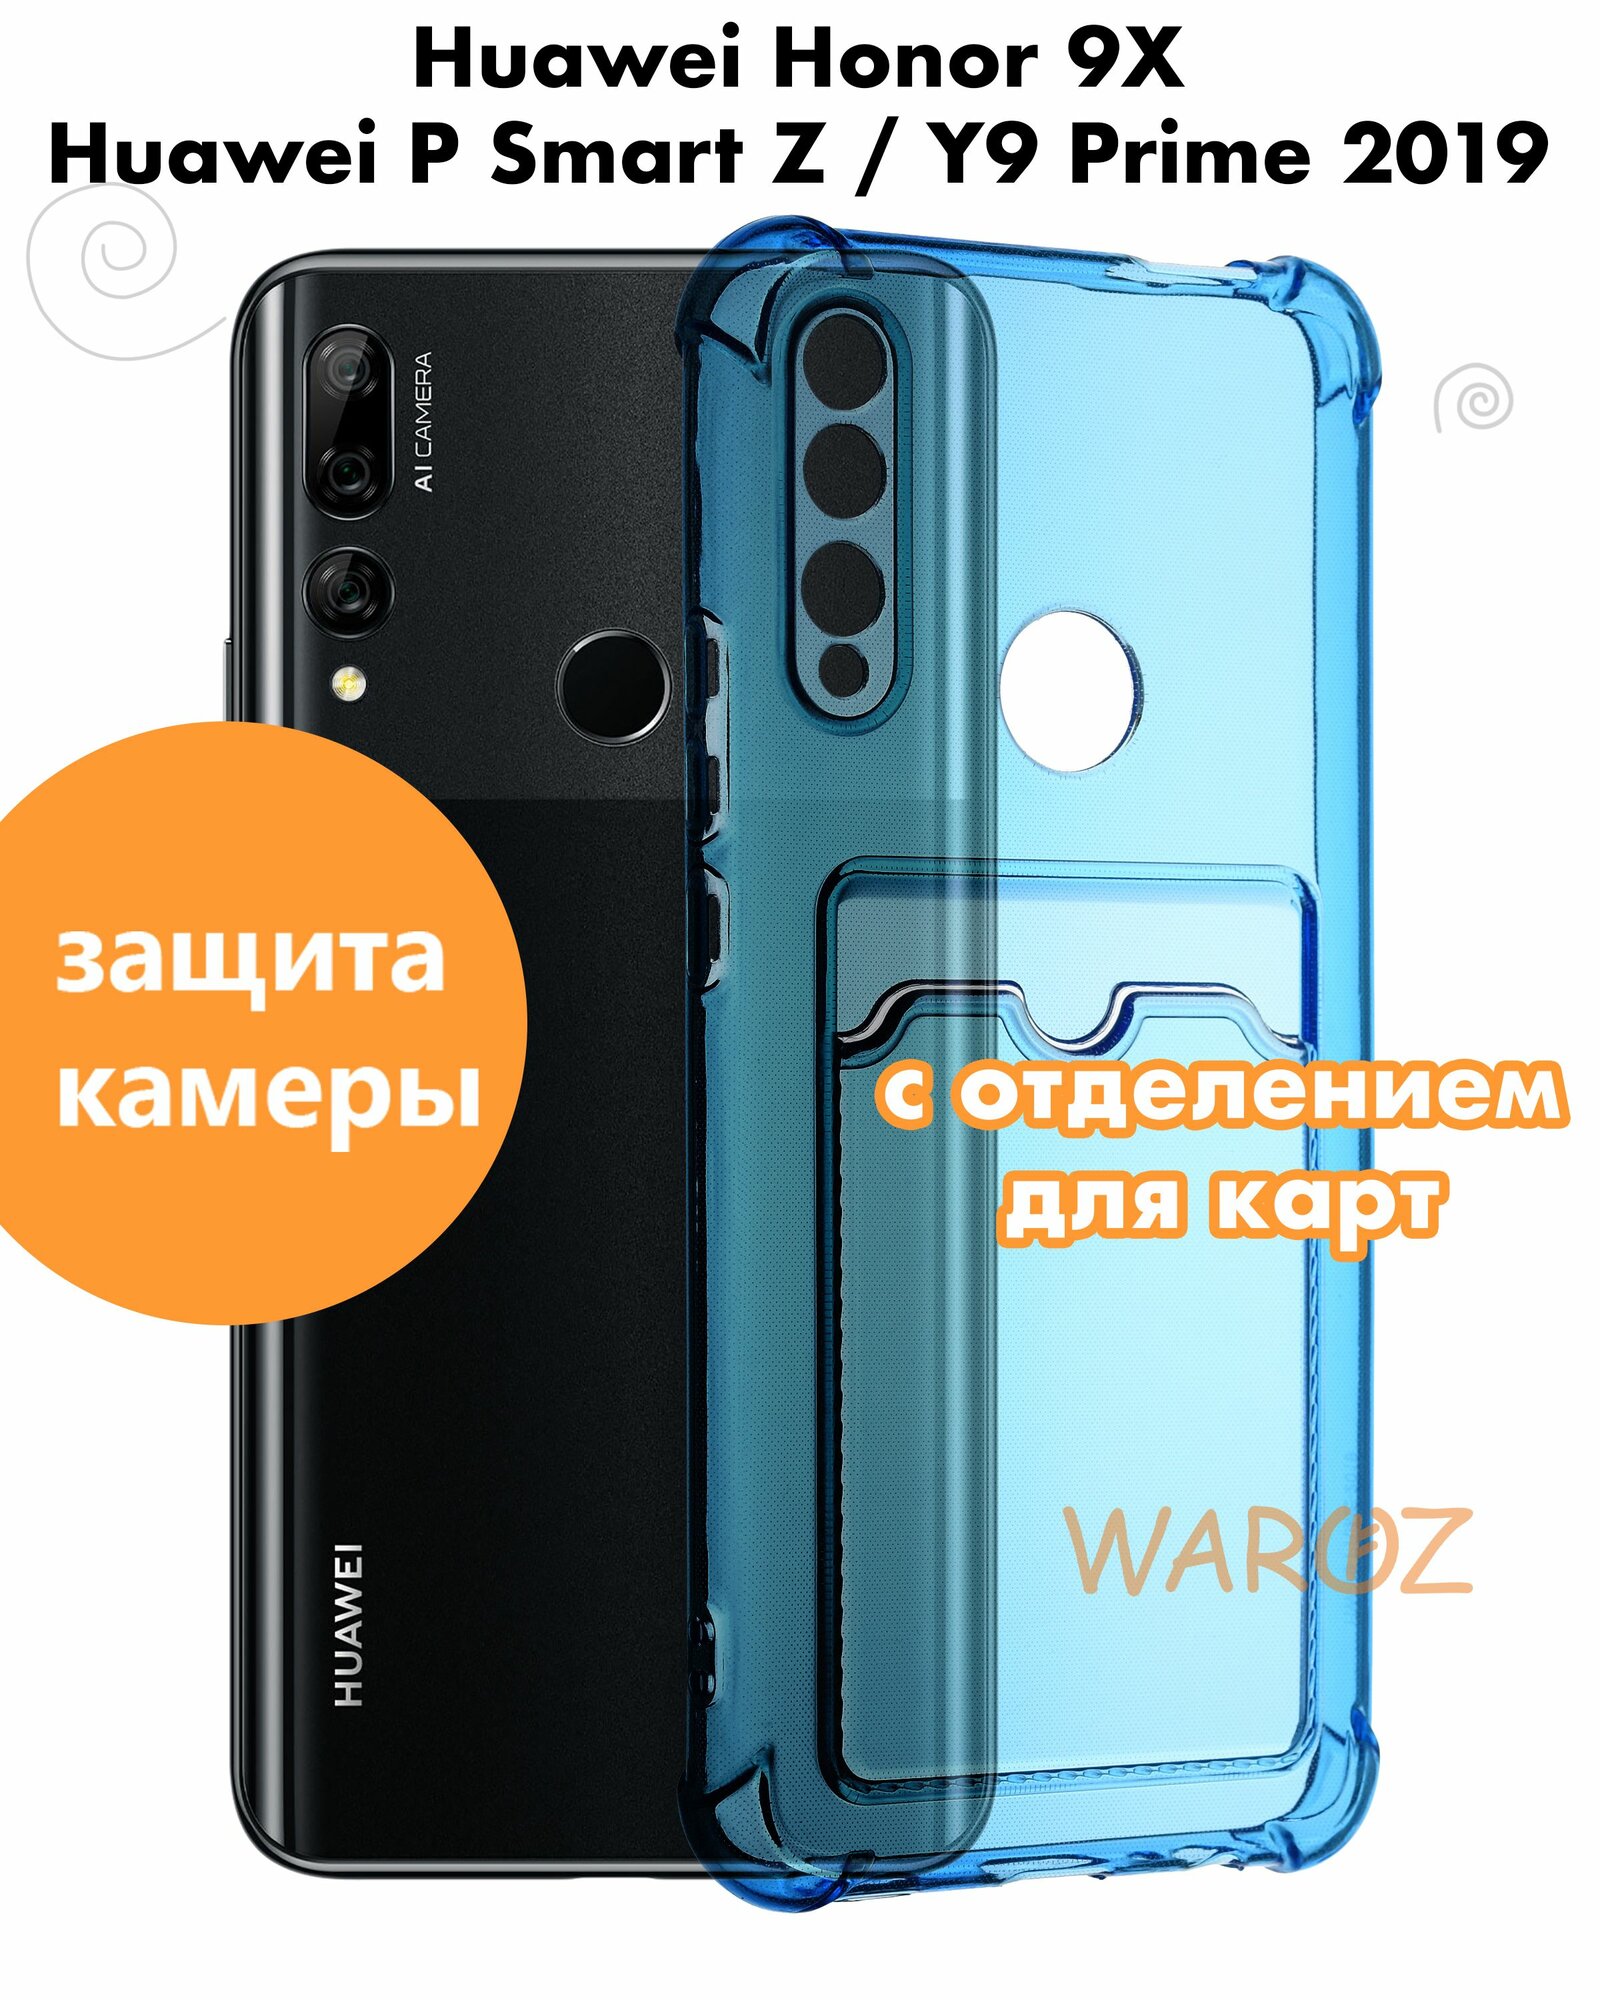 Чехол для смартфона Huawei HONOR 9X / Y9 Prime 2019 / P Smart Z силиконовый противоударный с защитой камеры